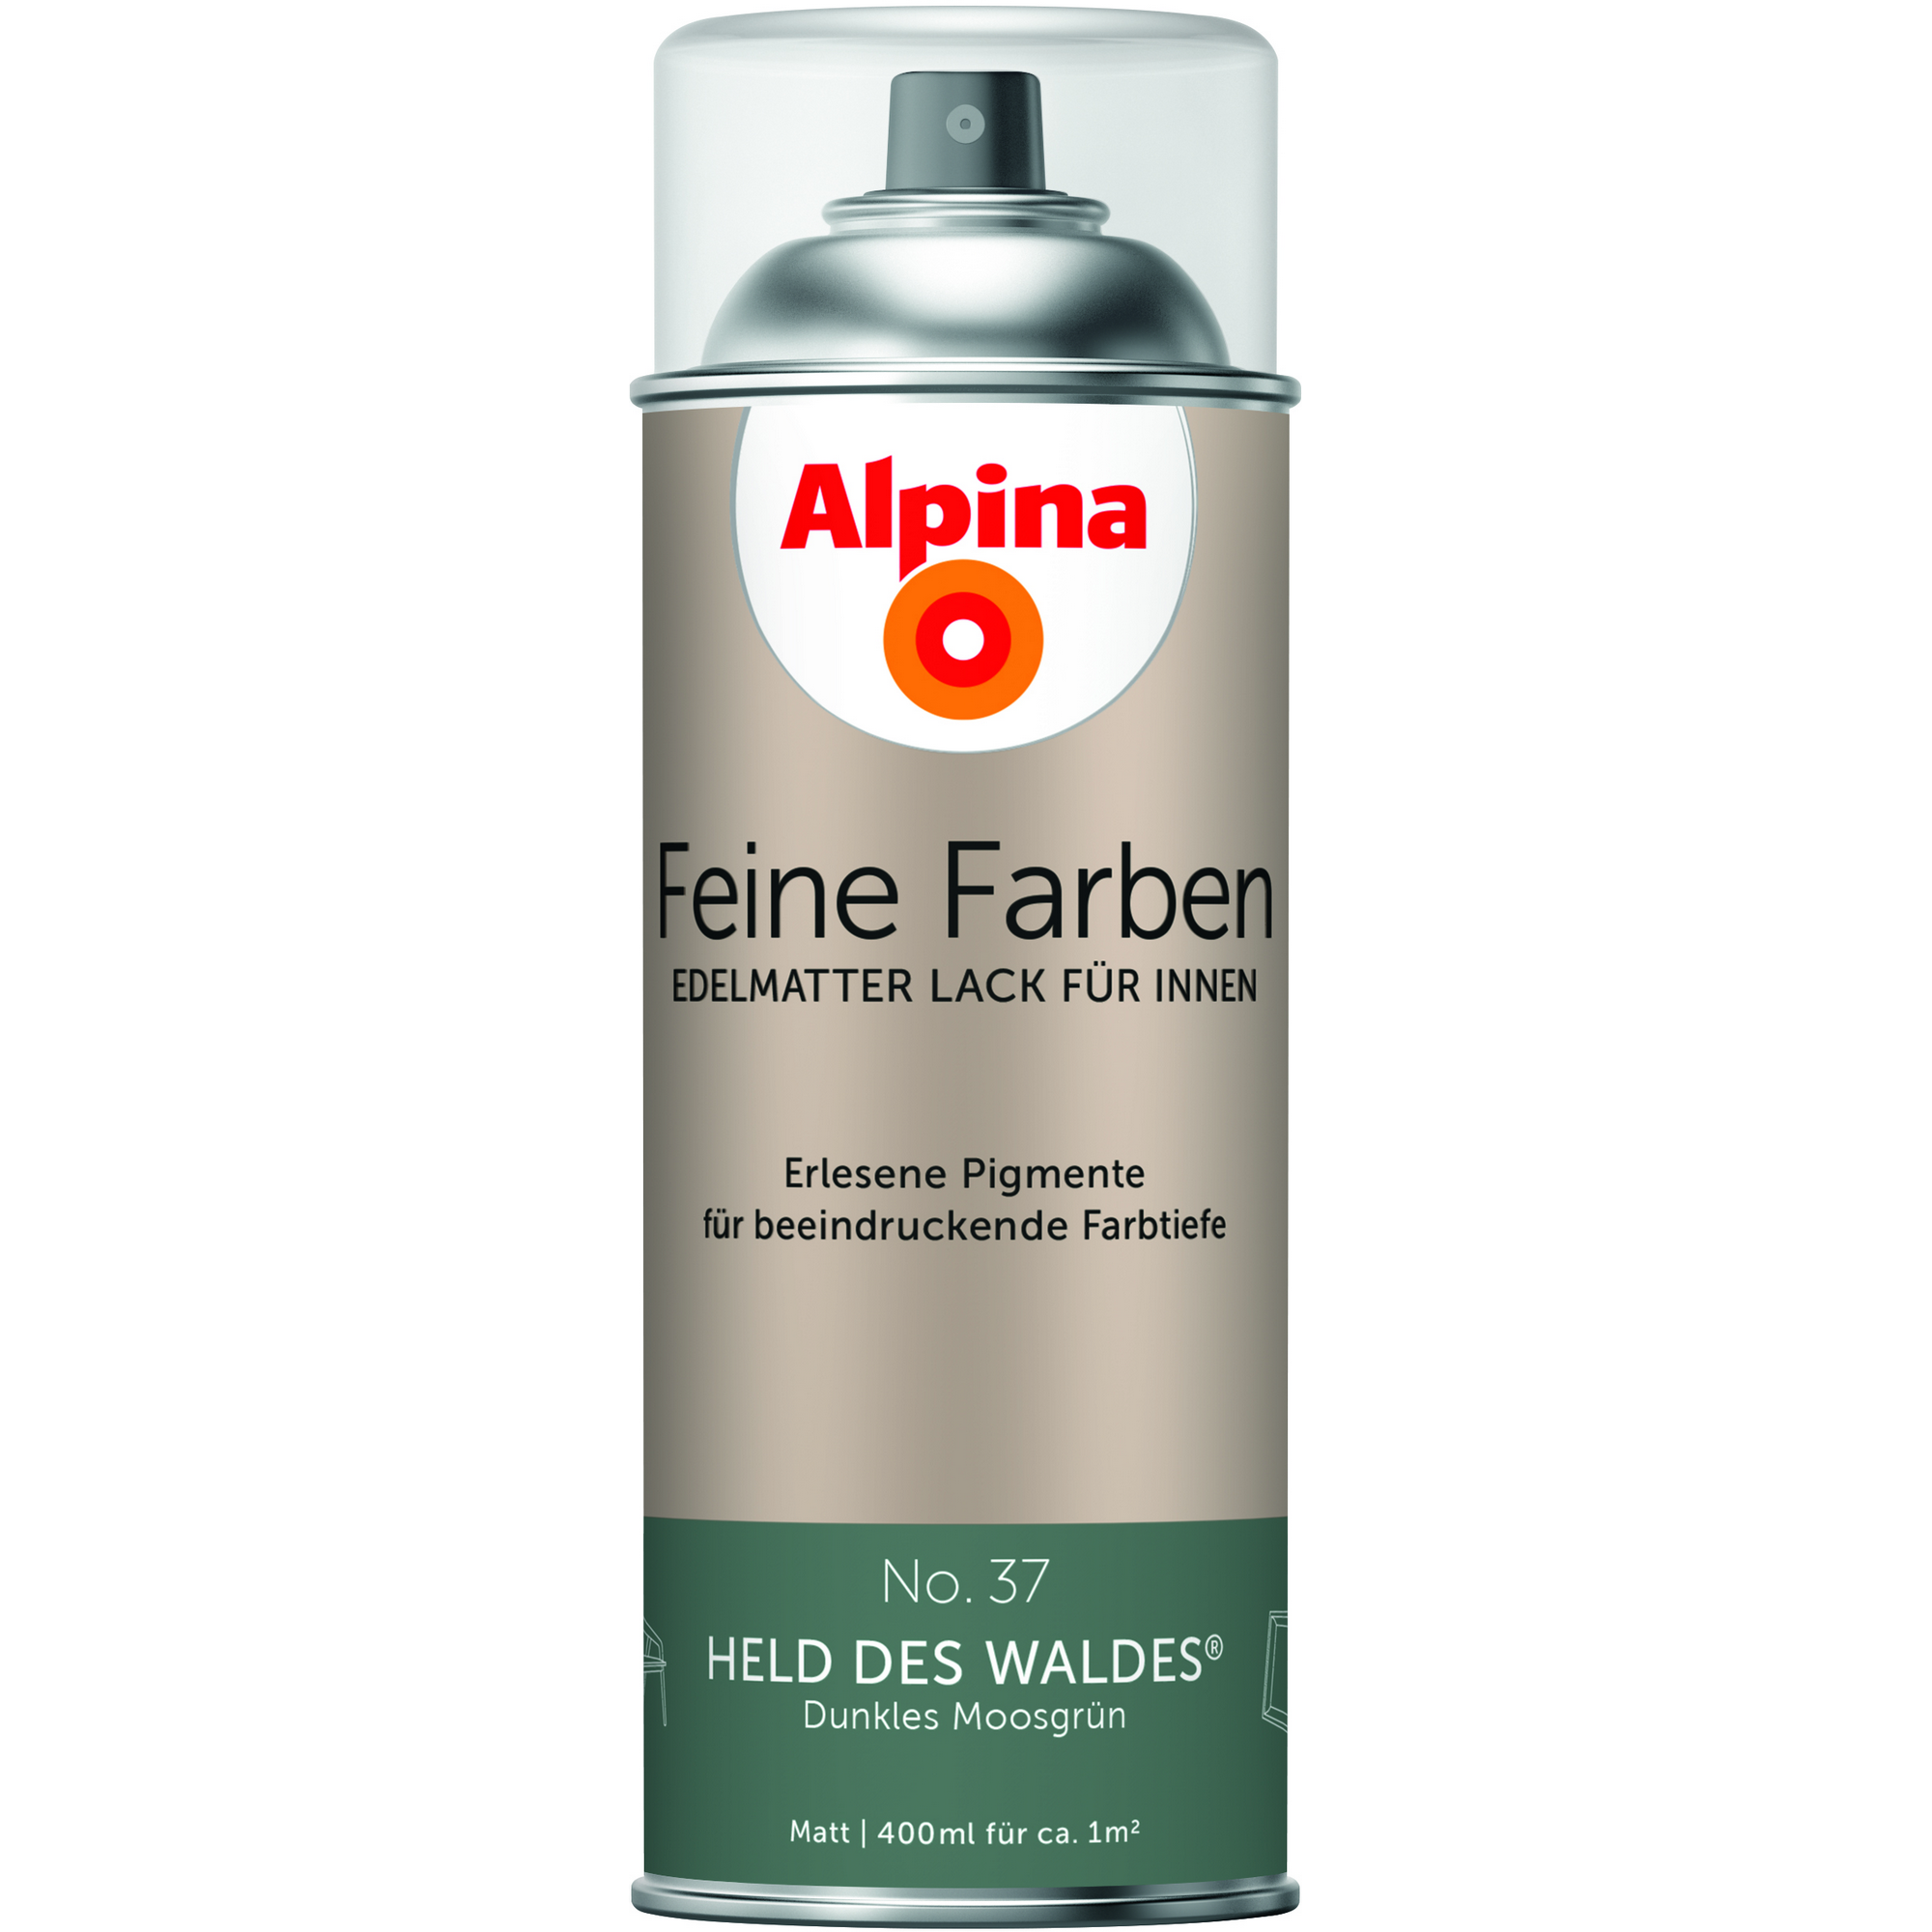 Feine Farben 'Held des Waldes' moosgrün matt 400 ml + product picture